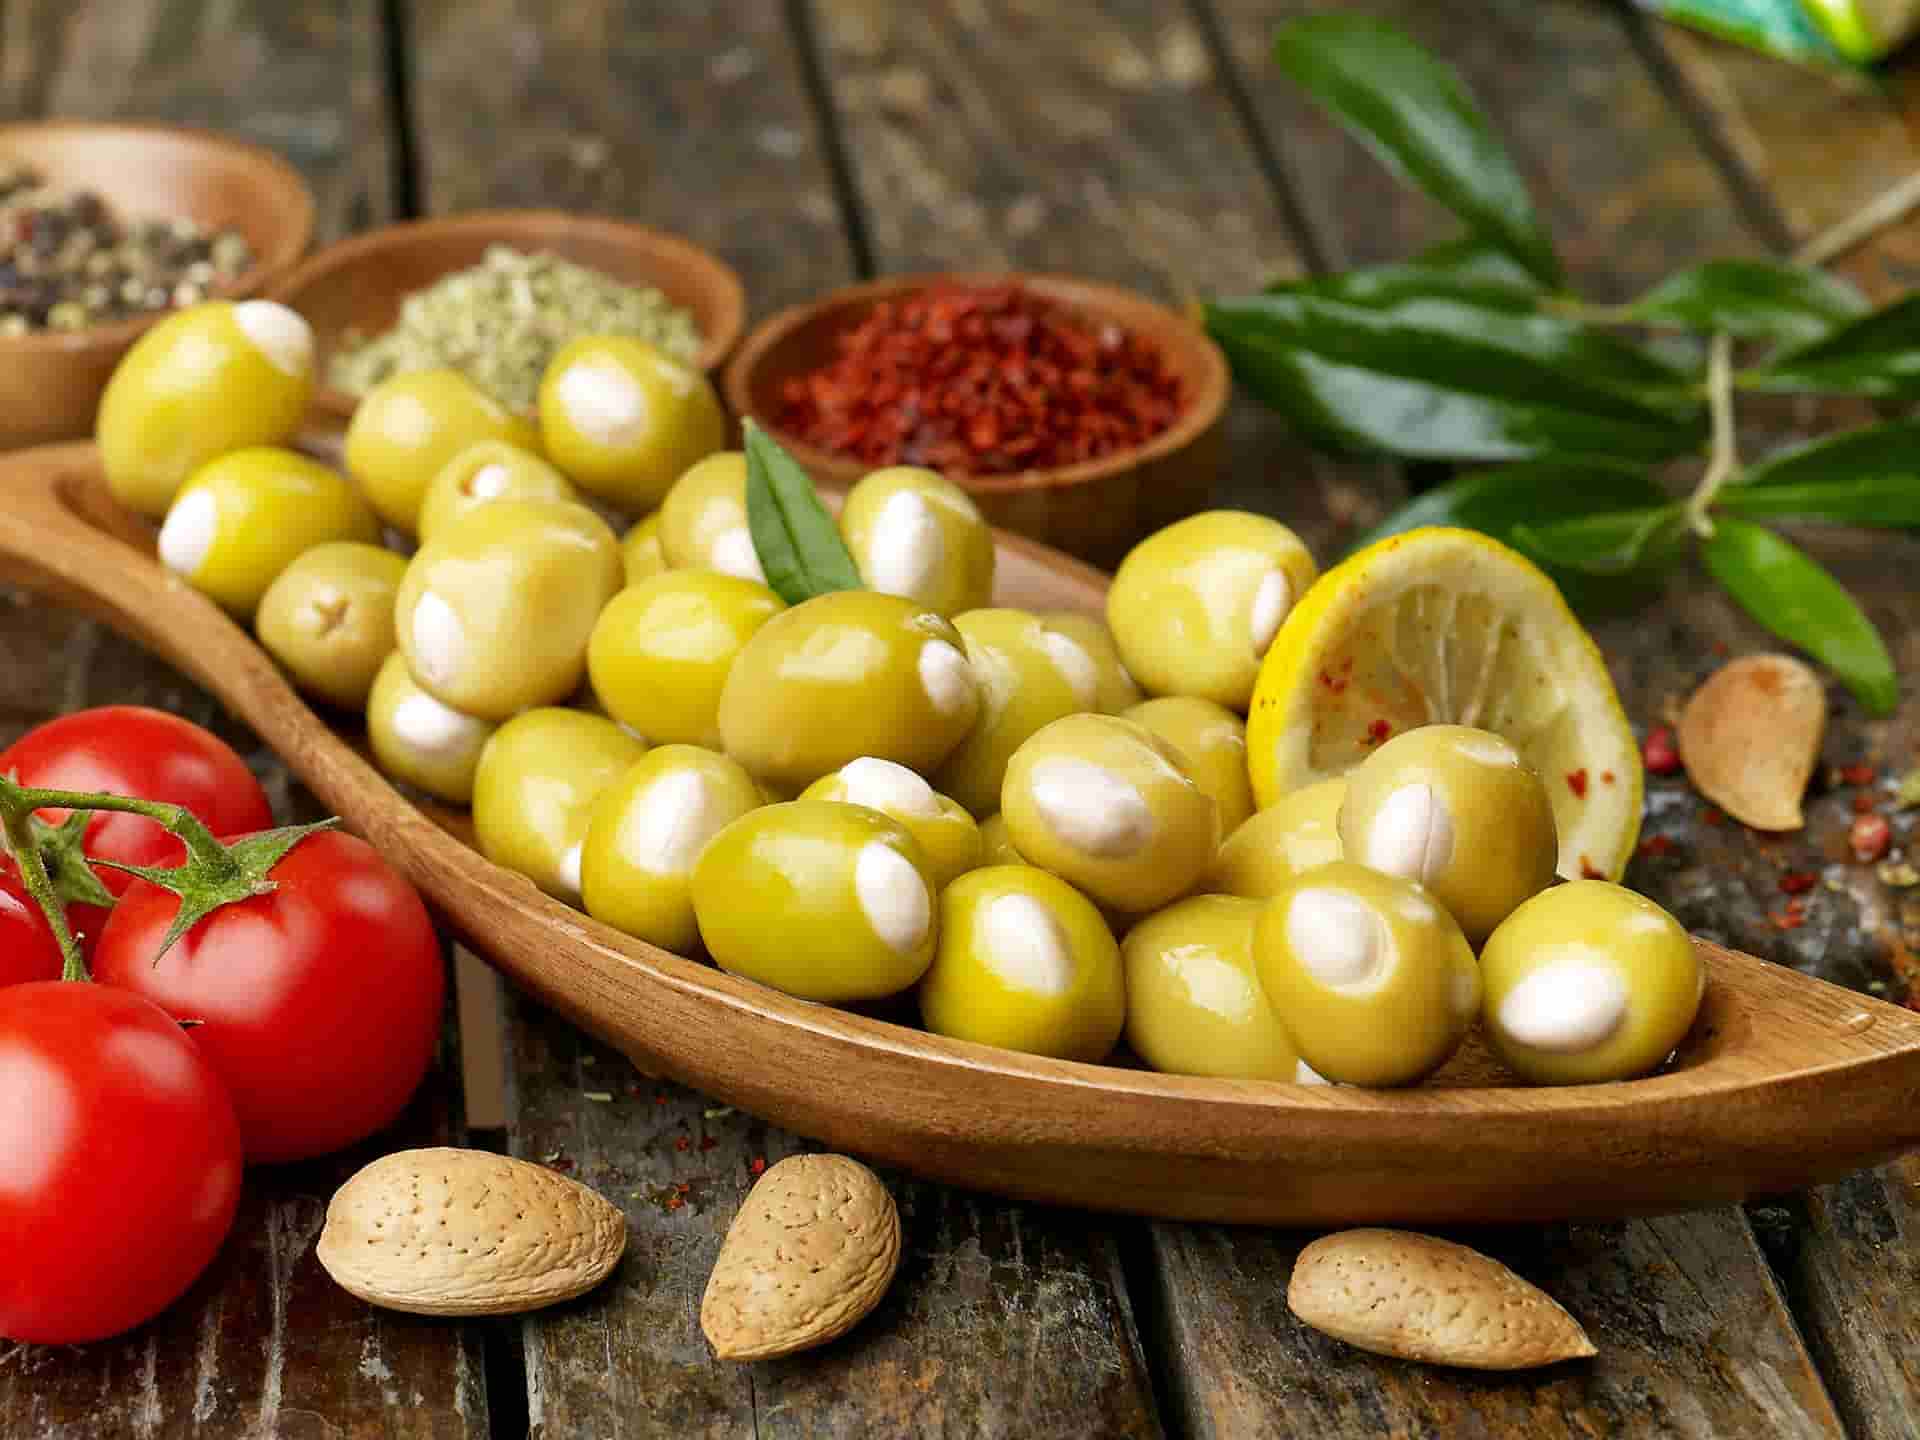 الزيتون في الاردن؛ شجرتها بطيئة النمو ذات عمر طويل 2 انواع اخضر اسود olive